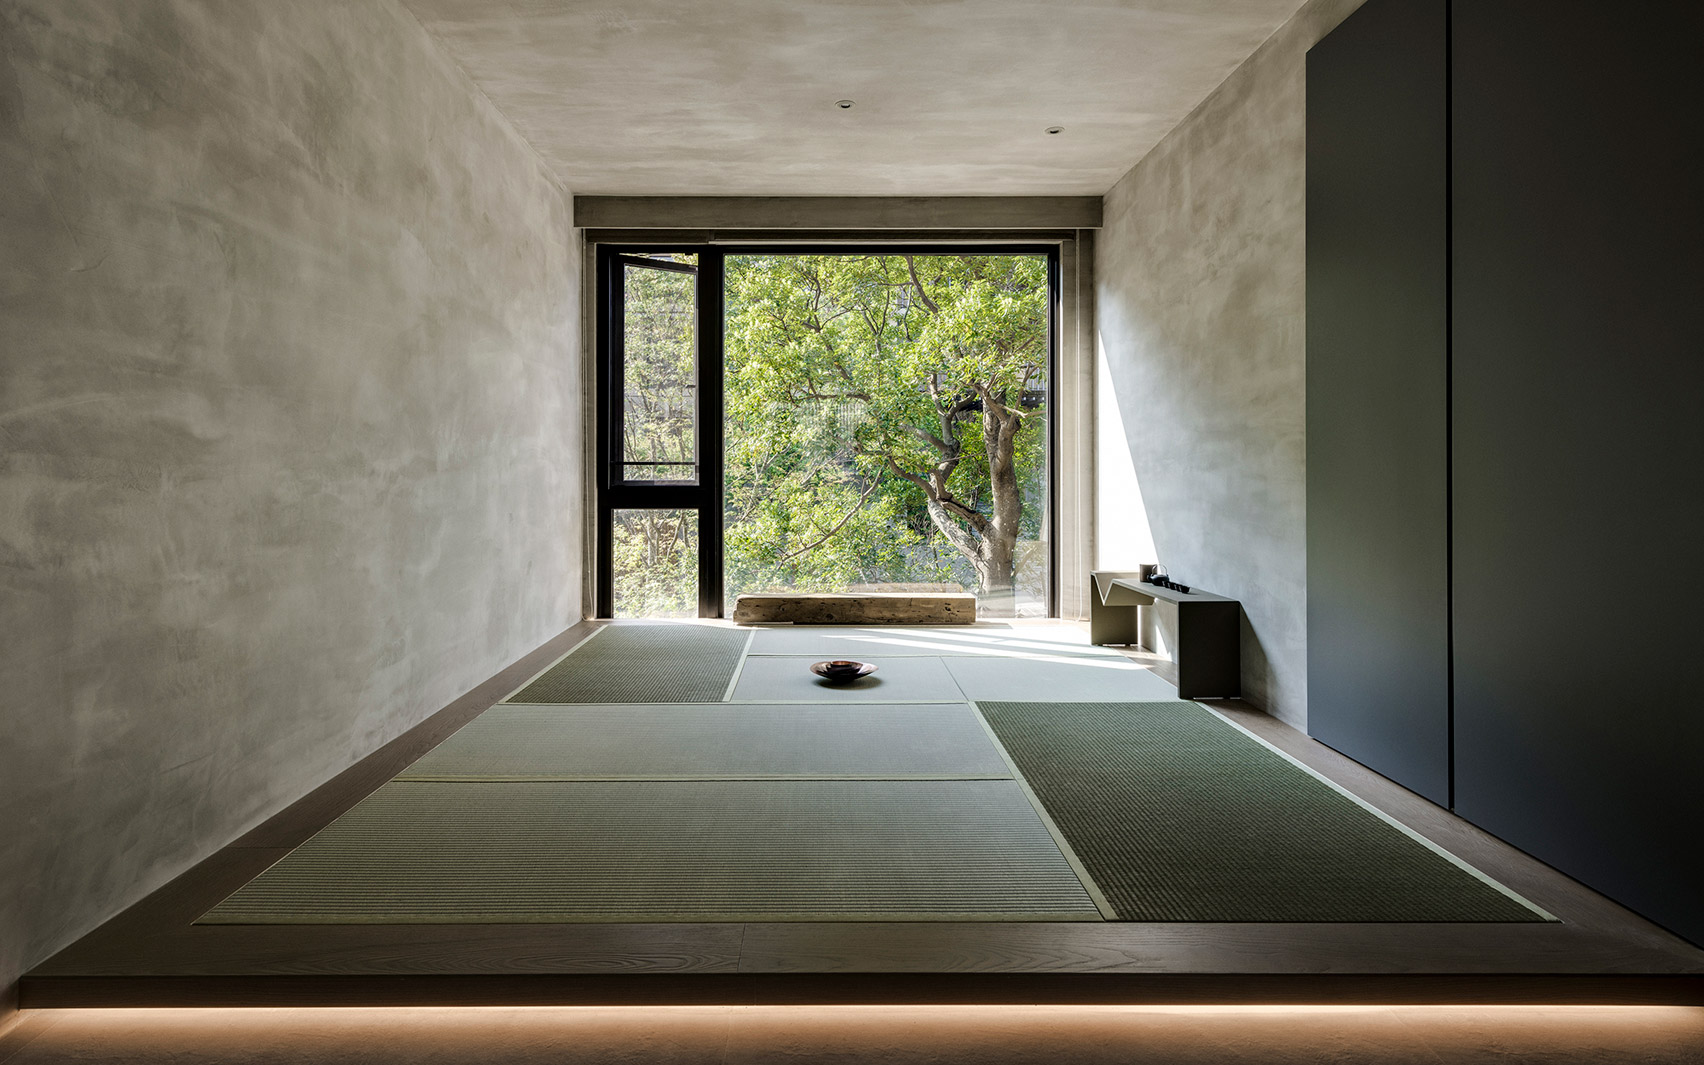 Din-a-ka apartment by Wei Yi International Design Associates